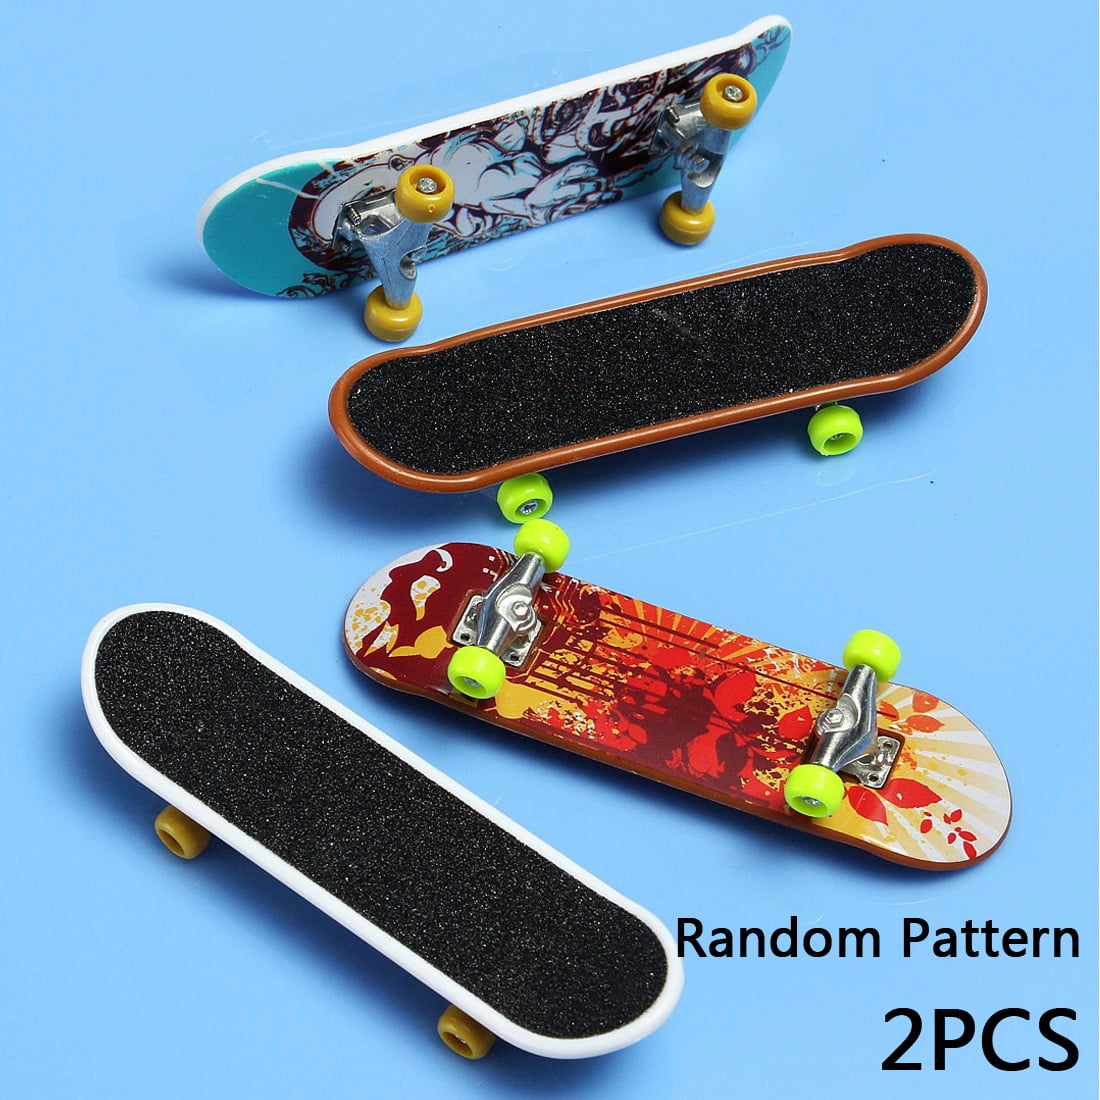 5X Mini Finger Board Skateboard Novelty Kid Boy Girl Toys Gift for PartyY*jg 